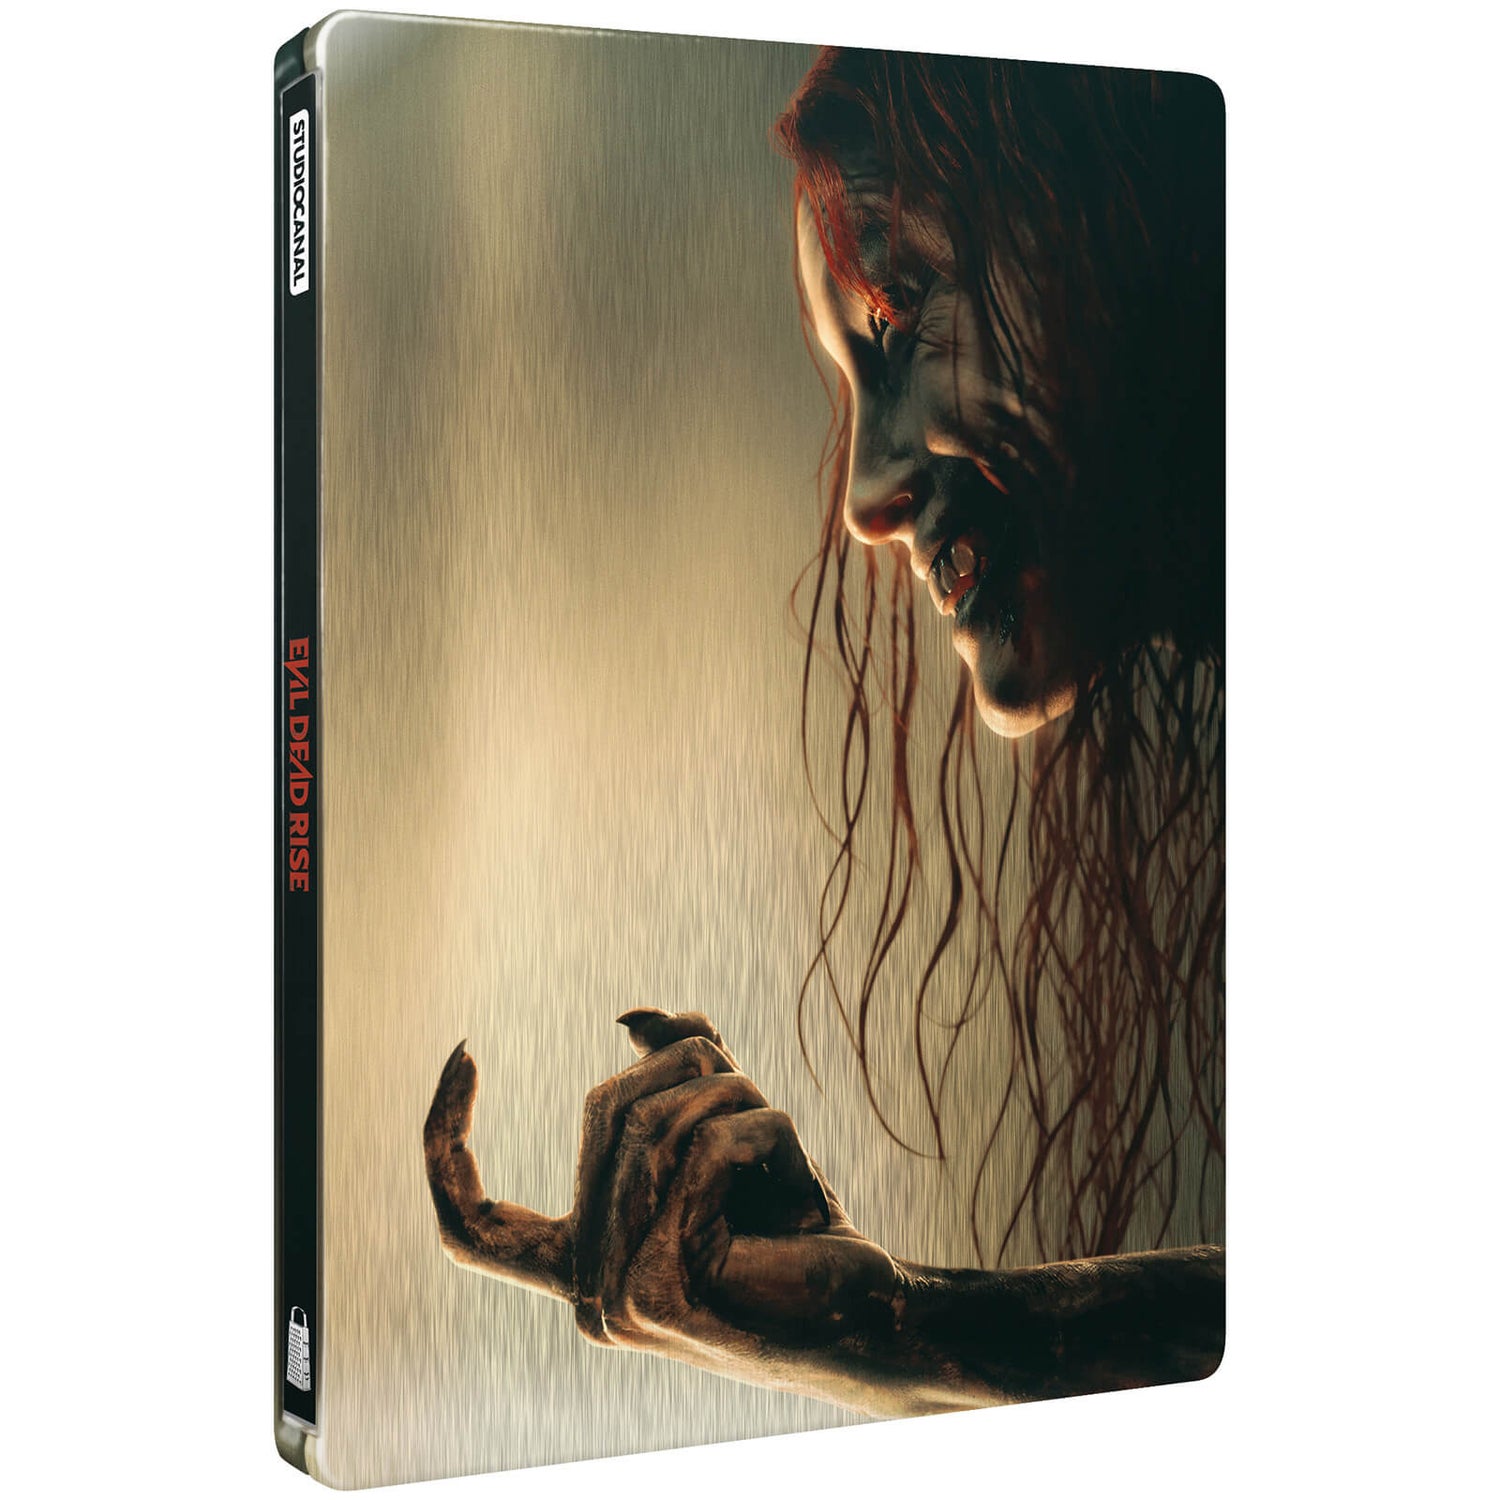 Evil Dead Rise 4K Ultra HD Steelbook (includes Blu-ray)